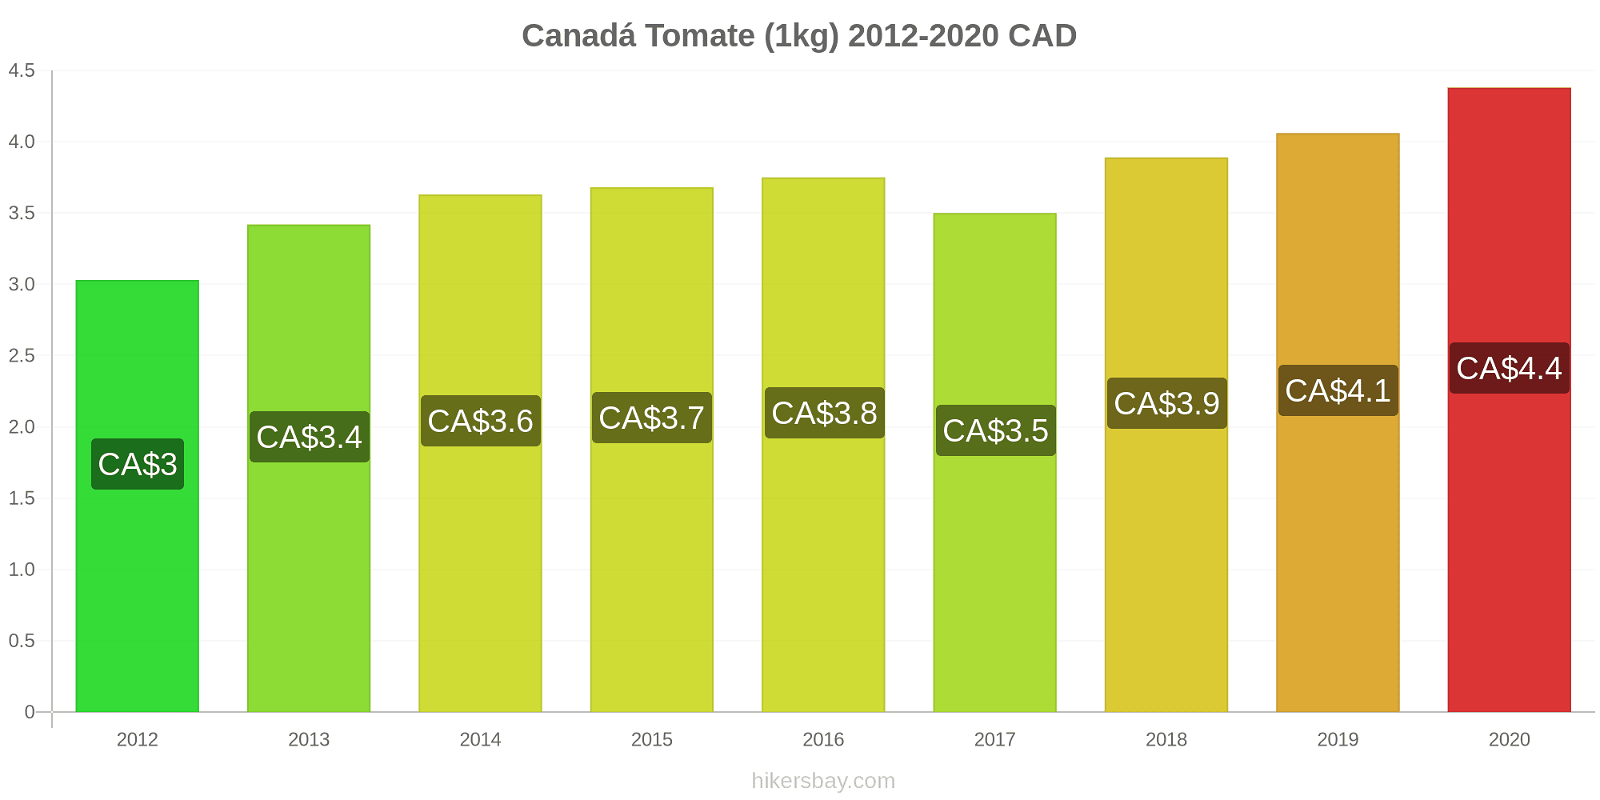 Canadá cambios de precios Tomate (1kg) hikersbay.com